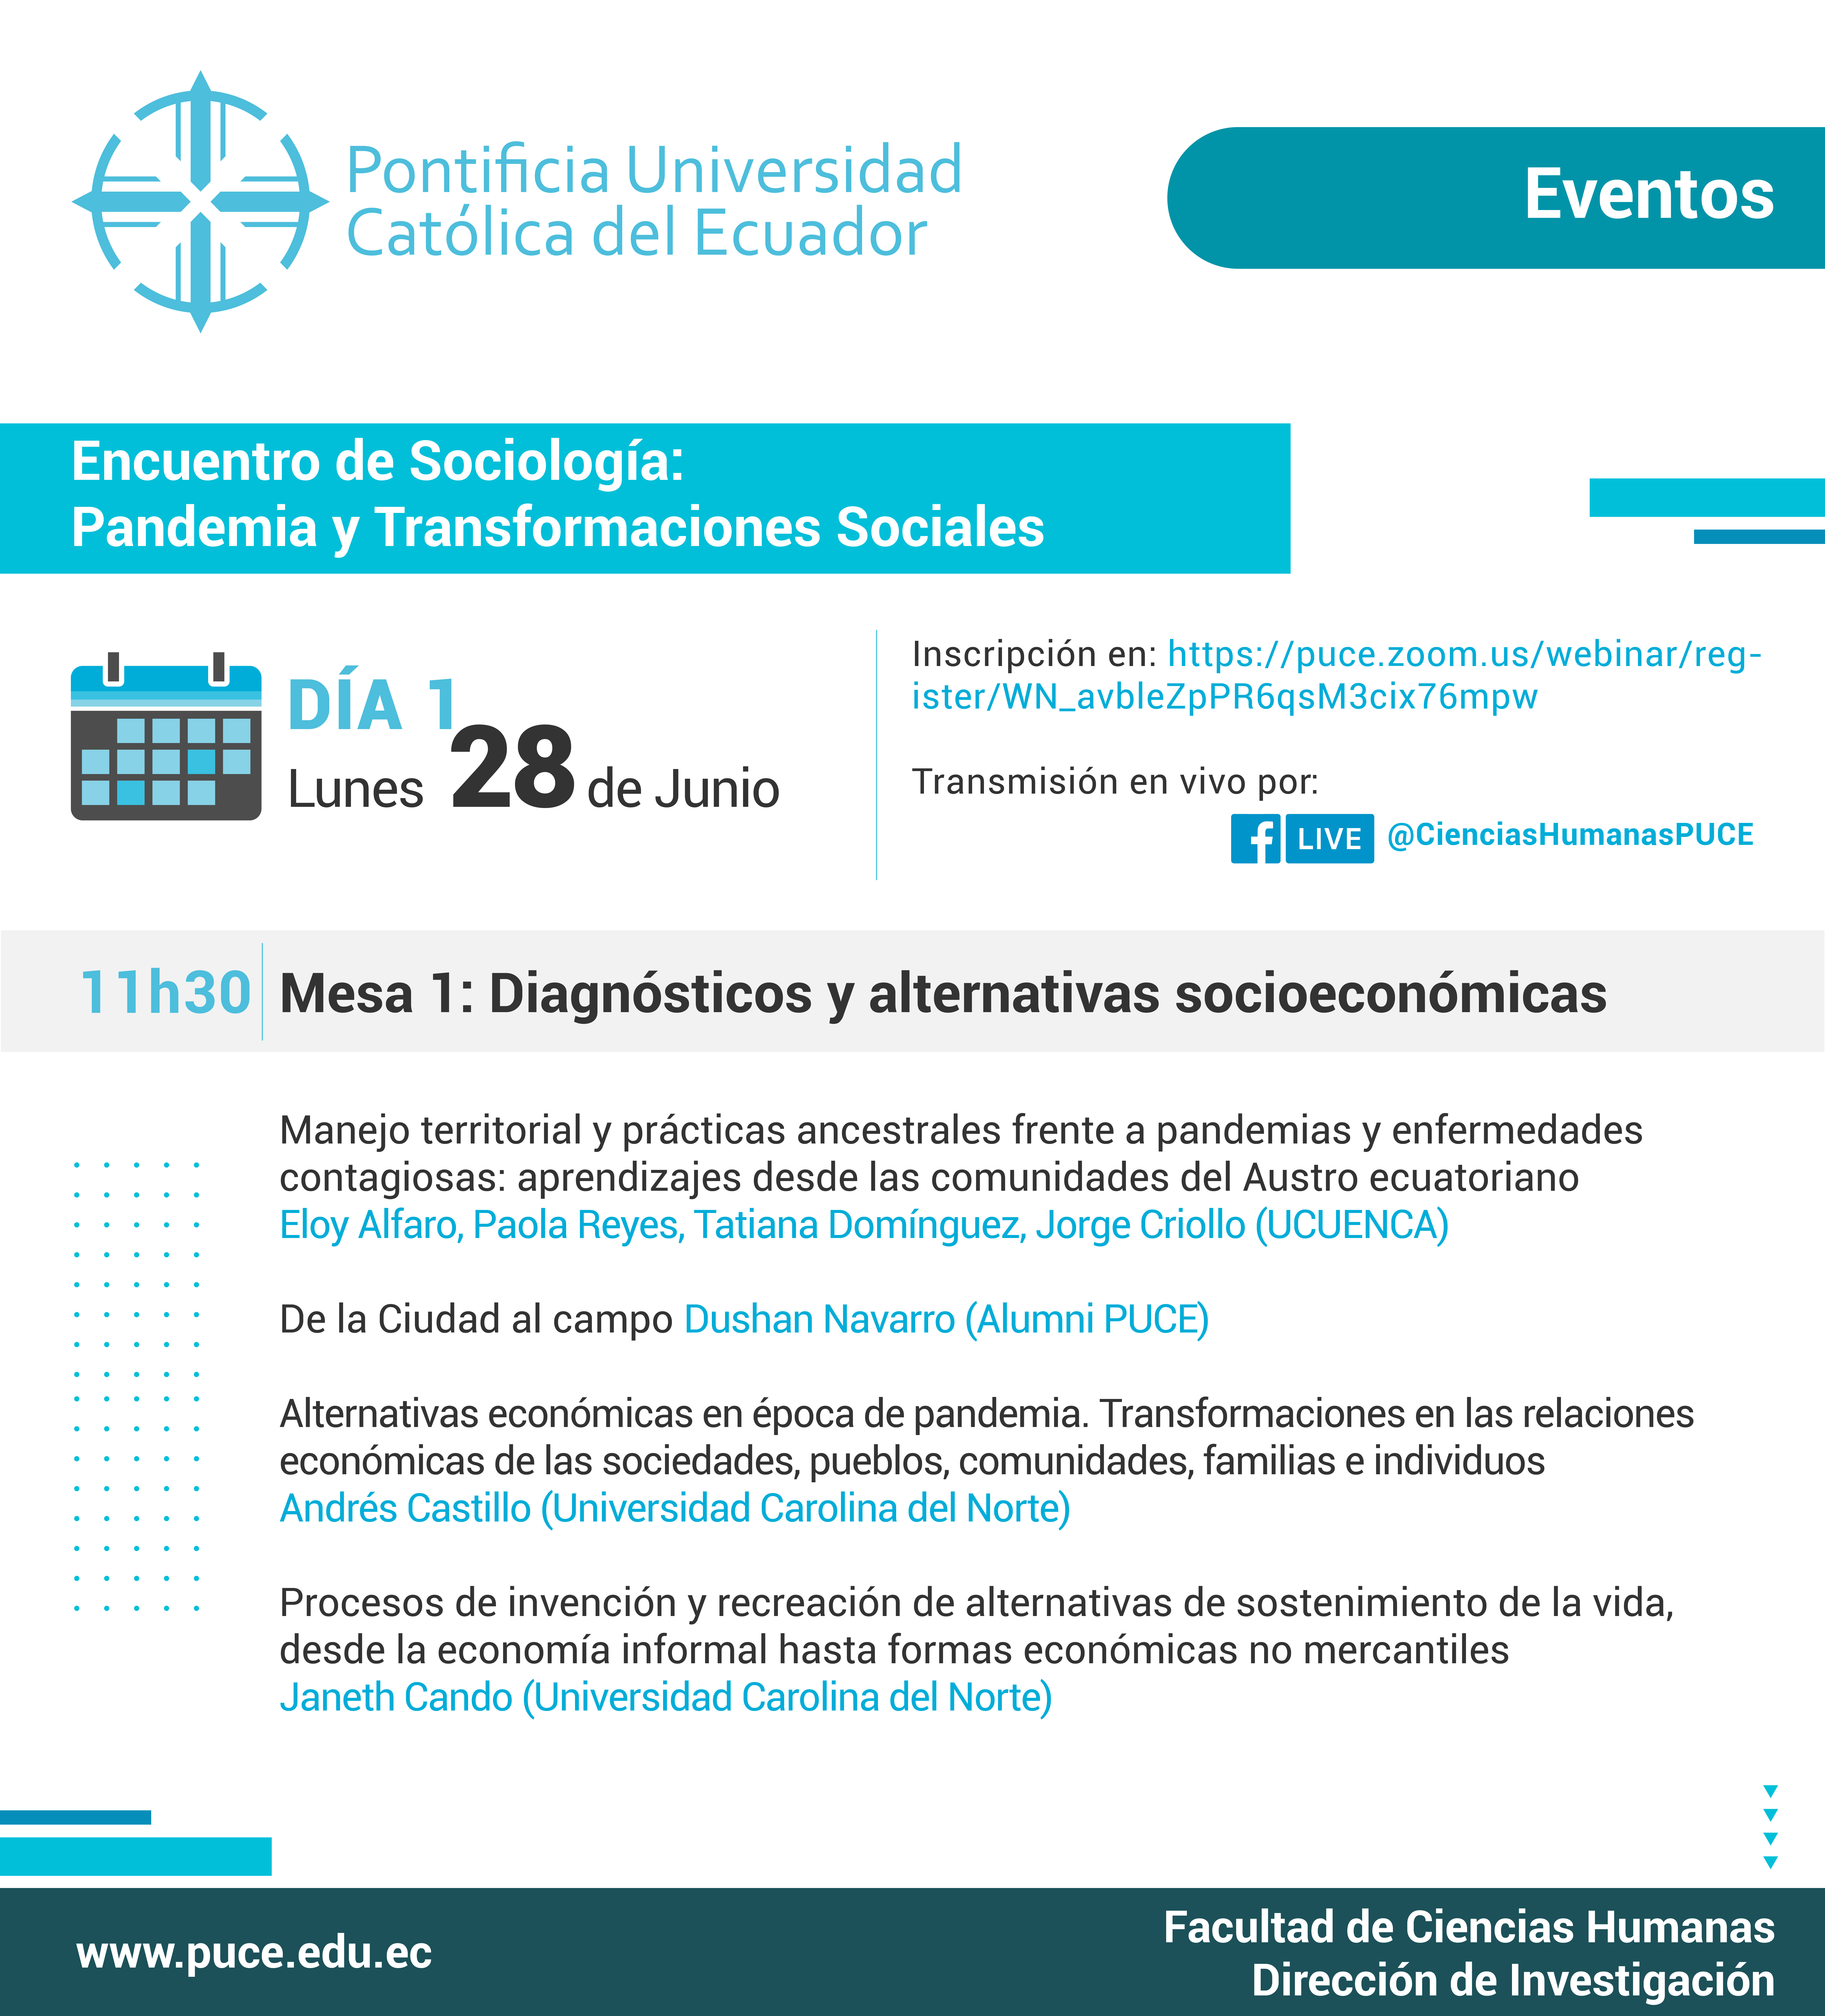 Encuentro de Sociología: Pandemia y Transformaciones Sociales - 28 de Junio